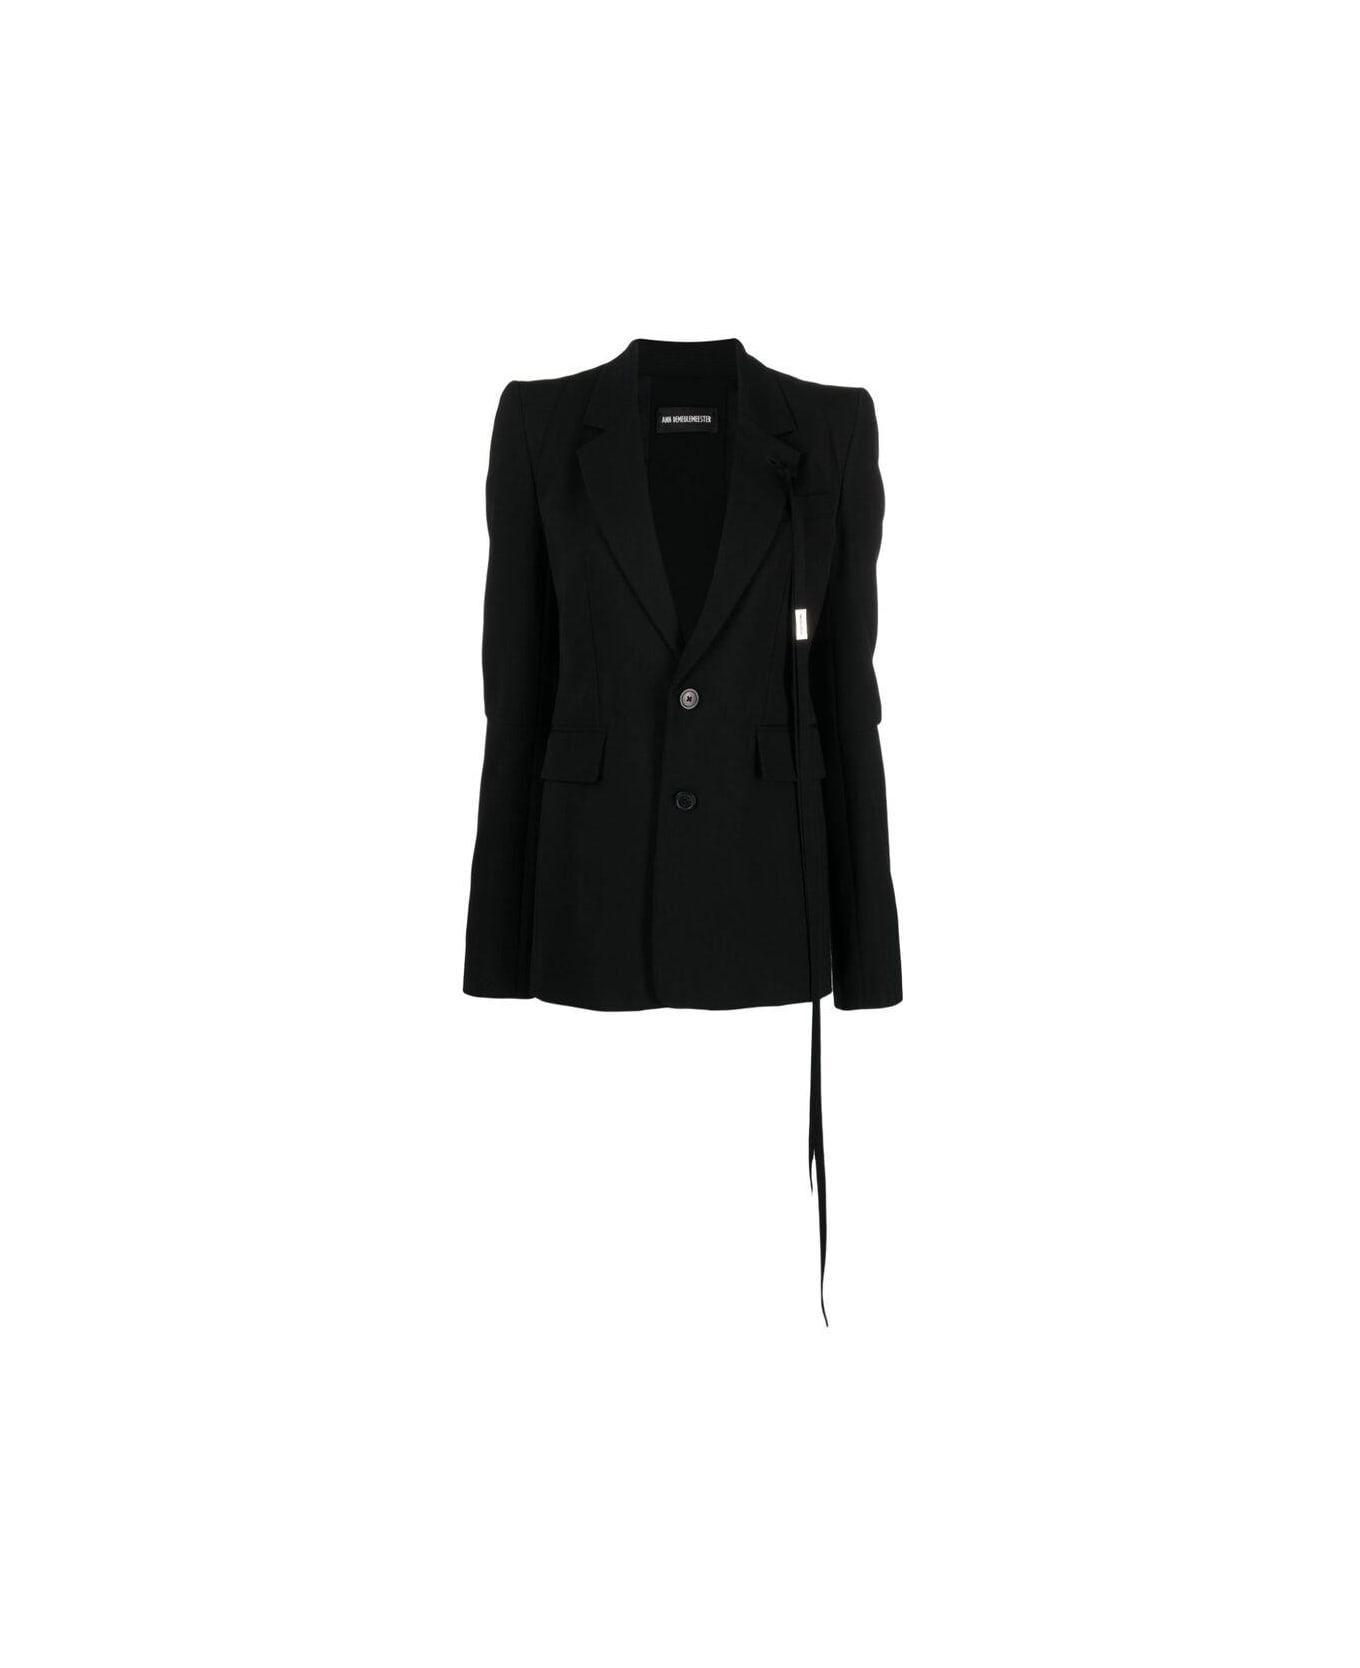 Ann Demeulemeester Tassle Detailed Jacket - BLACK ブレザー